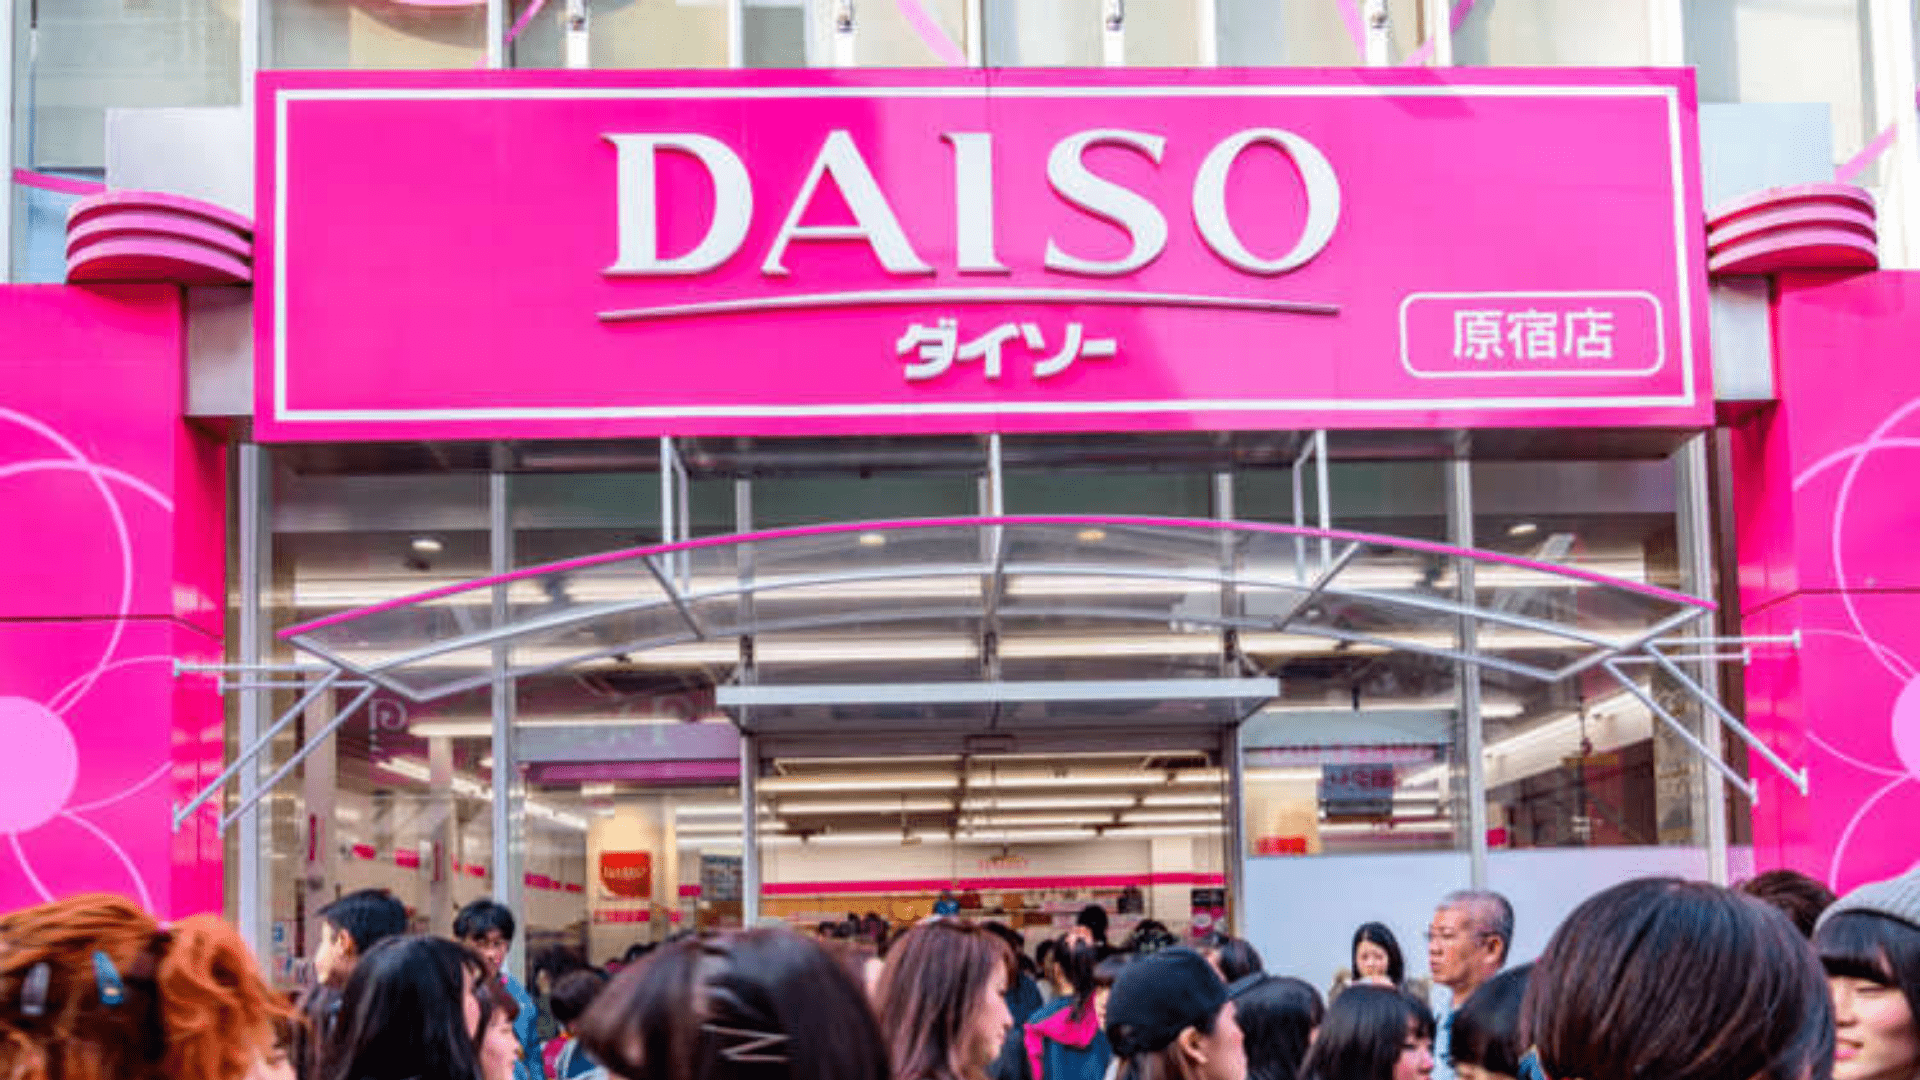 인기 일본 100엔 점포 다이소가 온라인 쇼핑몰을 운영하고 있습니다.